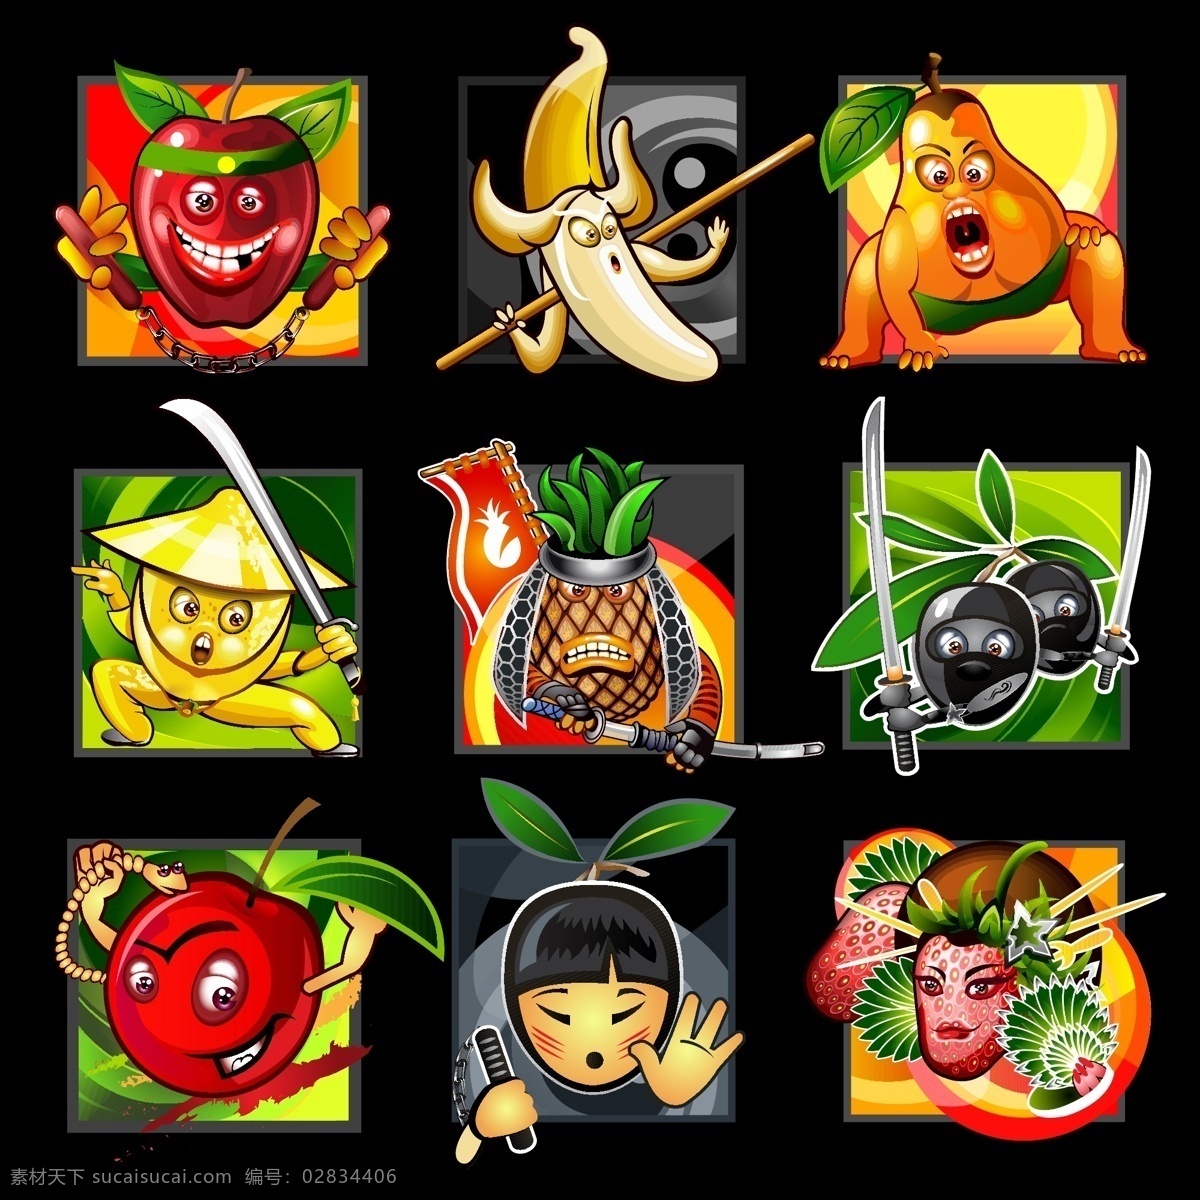 各种 水果 卡通造型 武侠造型 造型 卡通 武侠 苹果 香蕉 梨 菠萝 李子 樱桃 柠檬 草莓 卡通设计